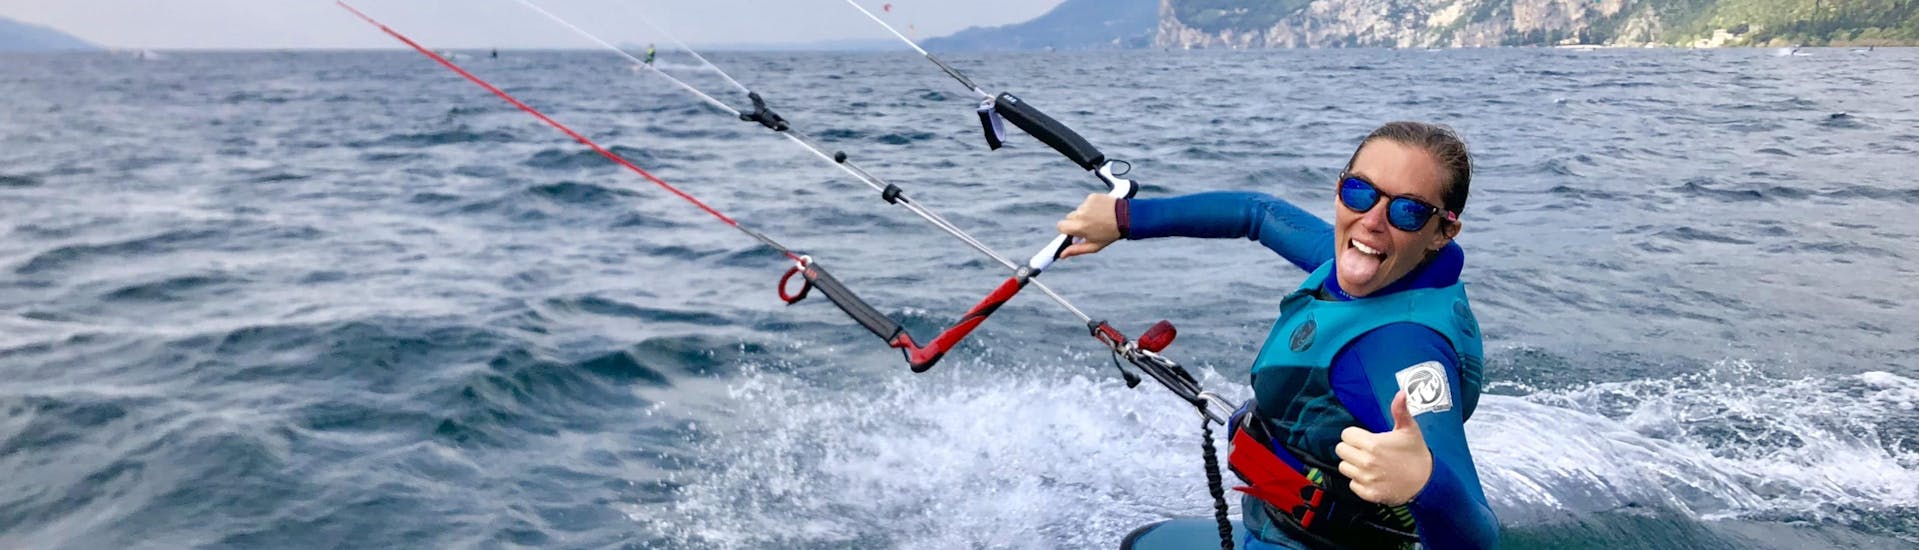 Kitesurfkurs für Fortgeschrittene - Campione del Garda.